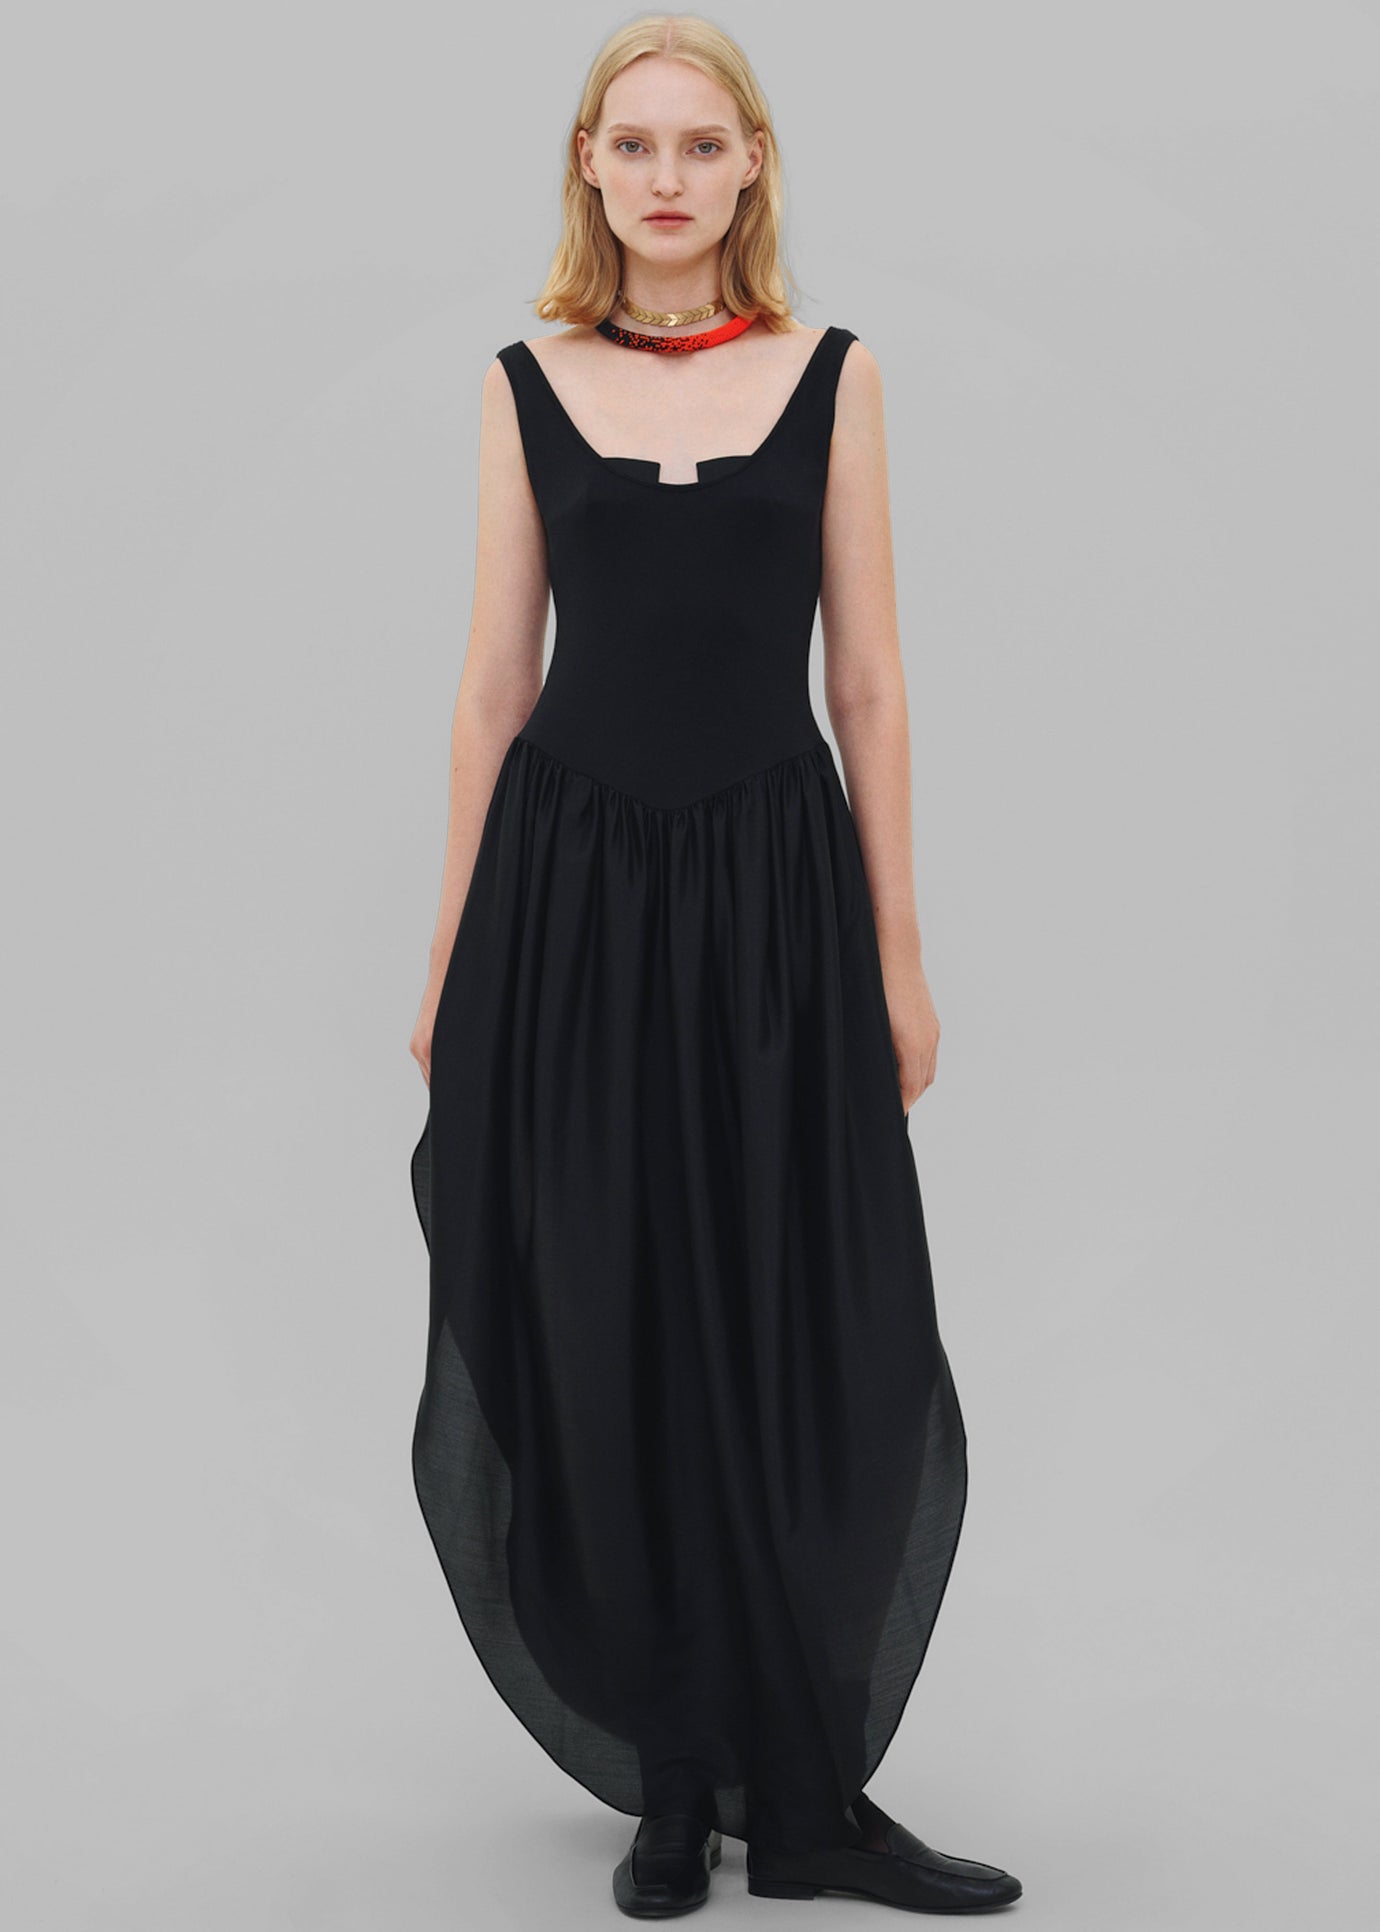 Bevza Tulip Dress - Black